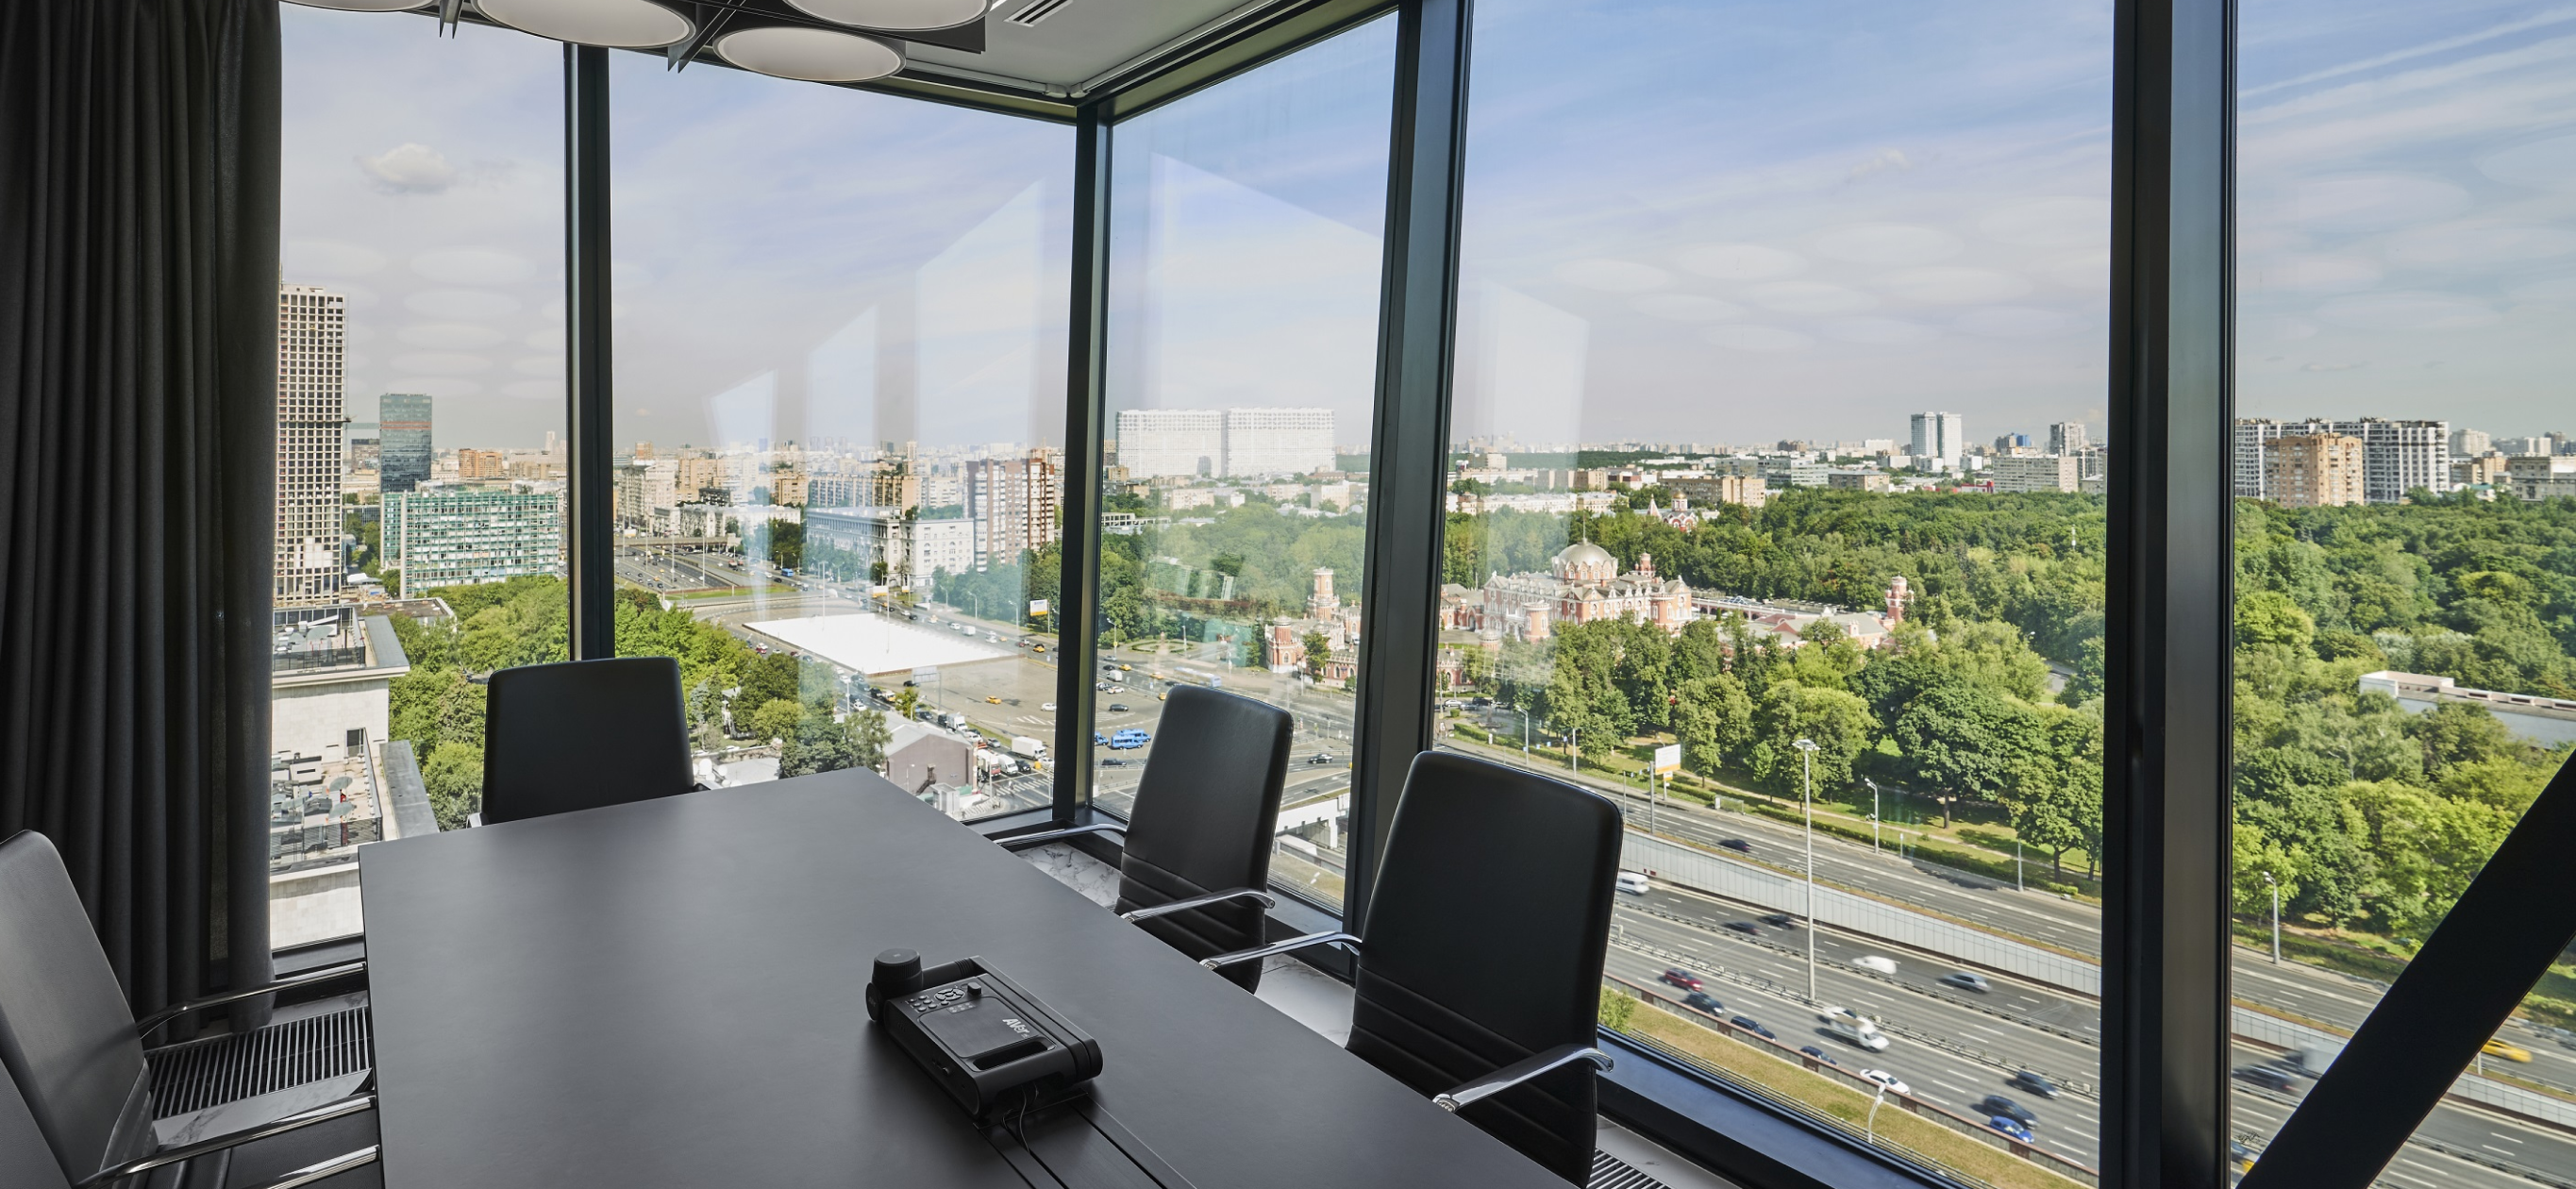 Сколько стоит арендовать офис в Москве